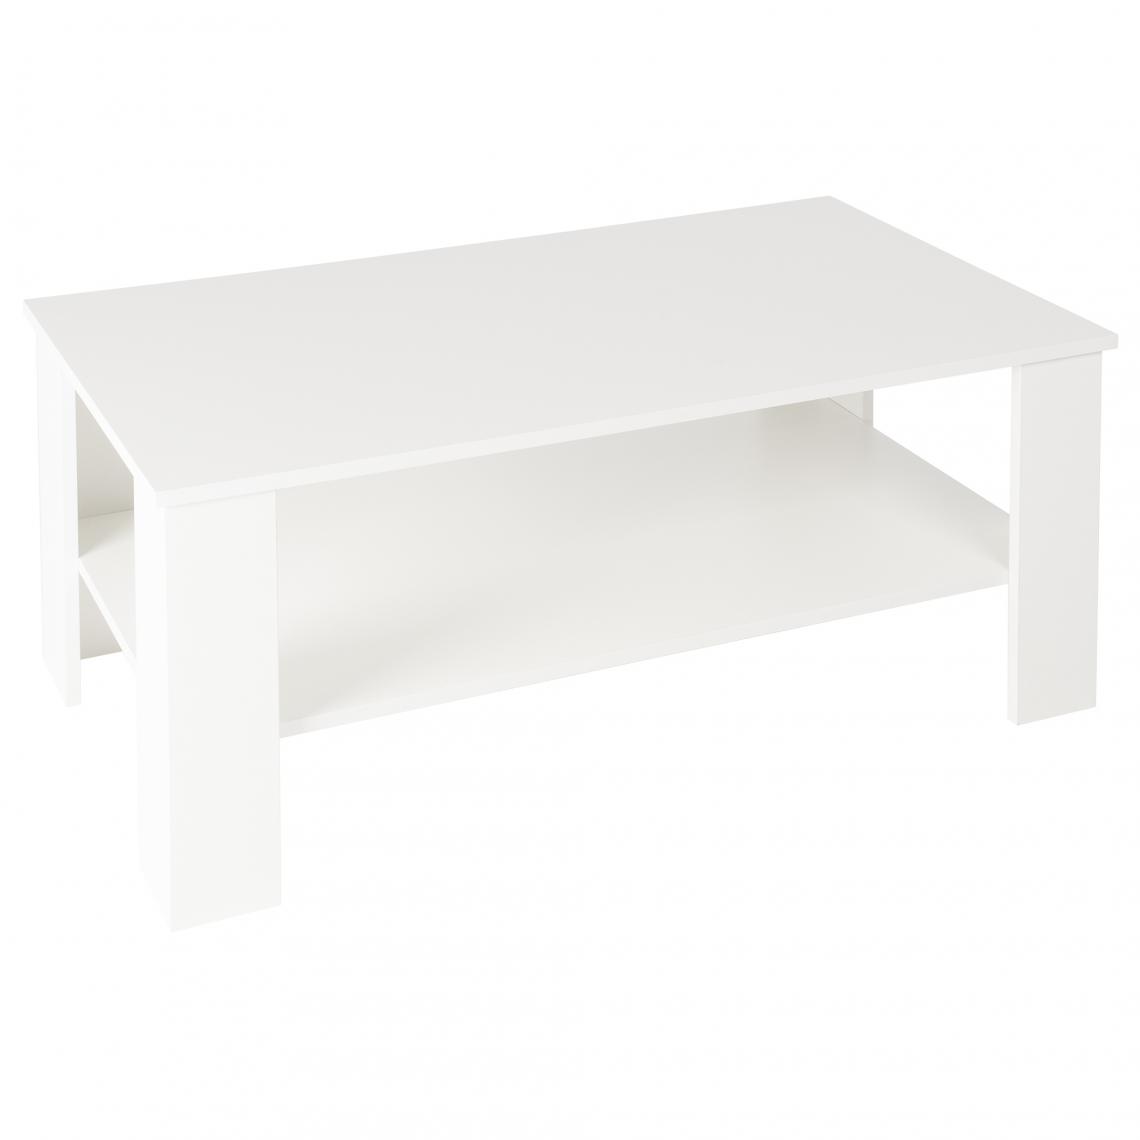 Ecd Germany - Table basse blanc de salon table d'appoint console élégante moderne 100x43x57 cm - Tables basses